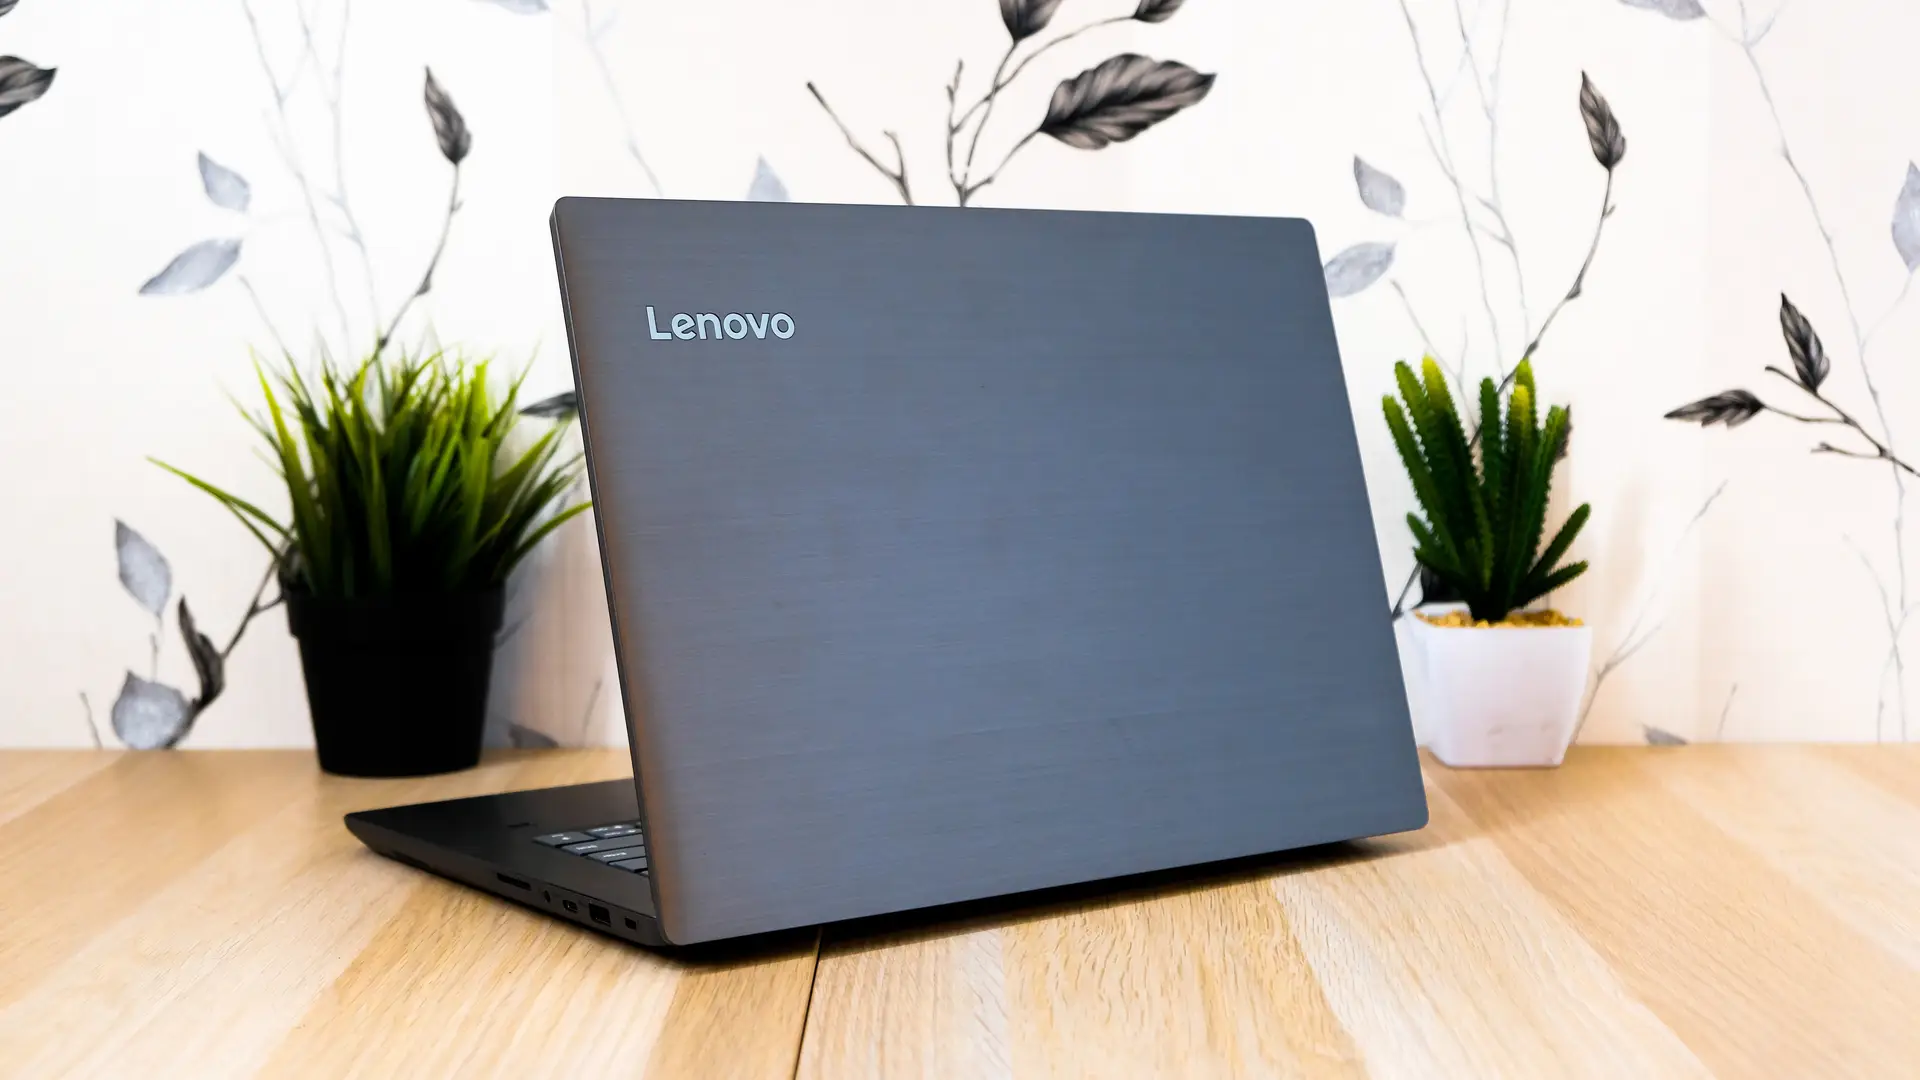 Modelo Lenovo mostra que a empresa é uma das melhores marcas de notebook